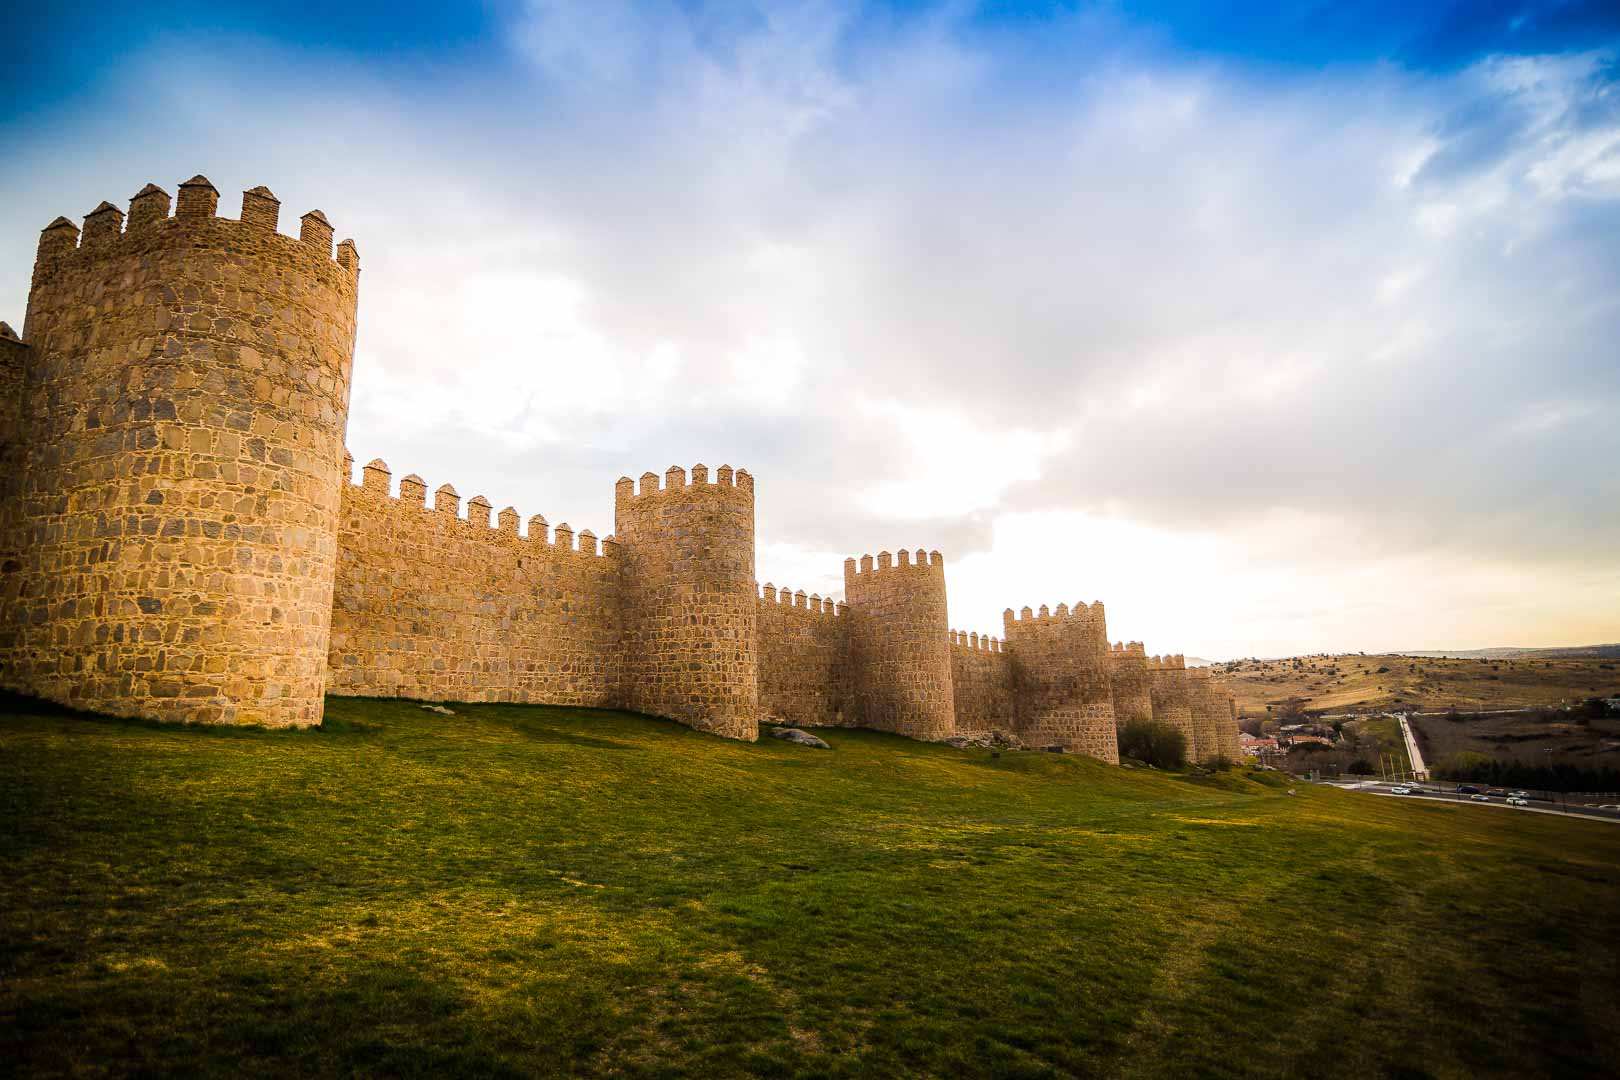 Muralla de Avila - Walking on the Fortified Walls of Avila, Spain